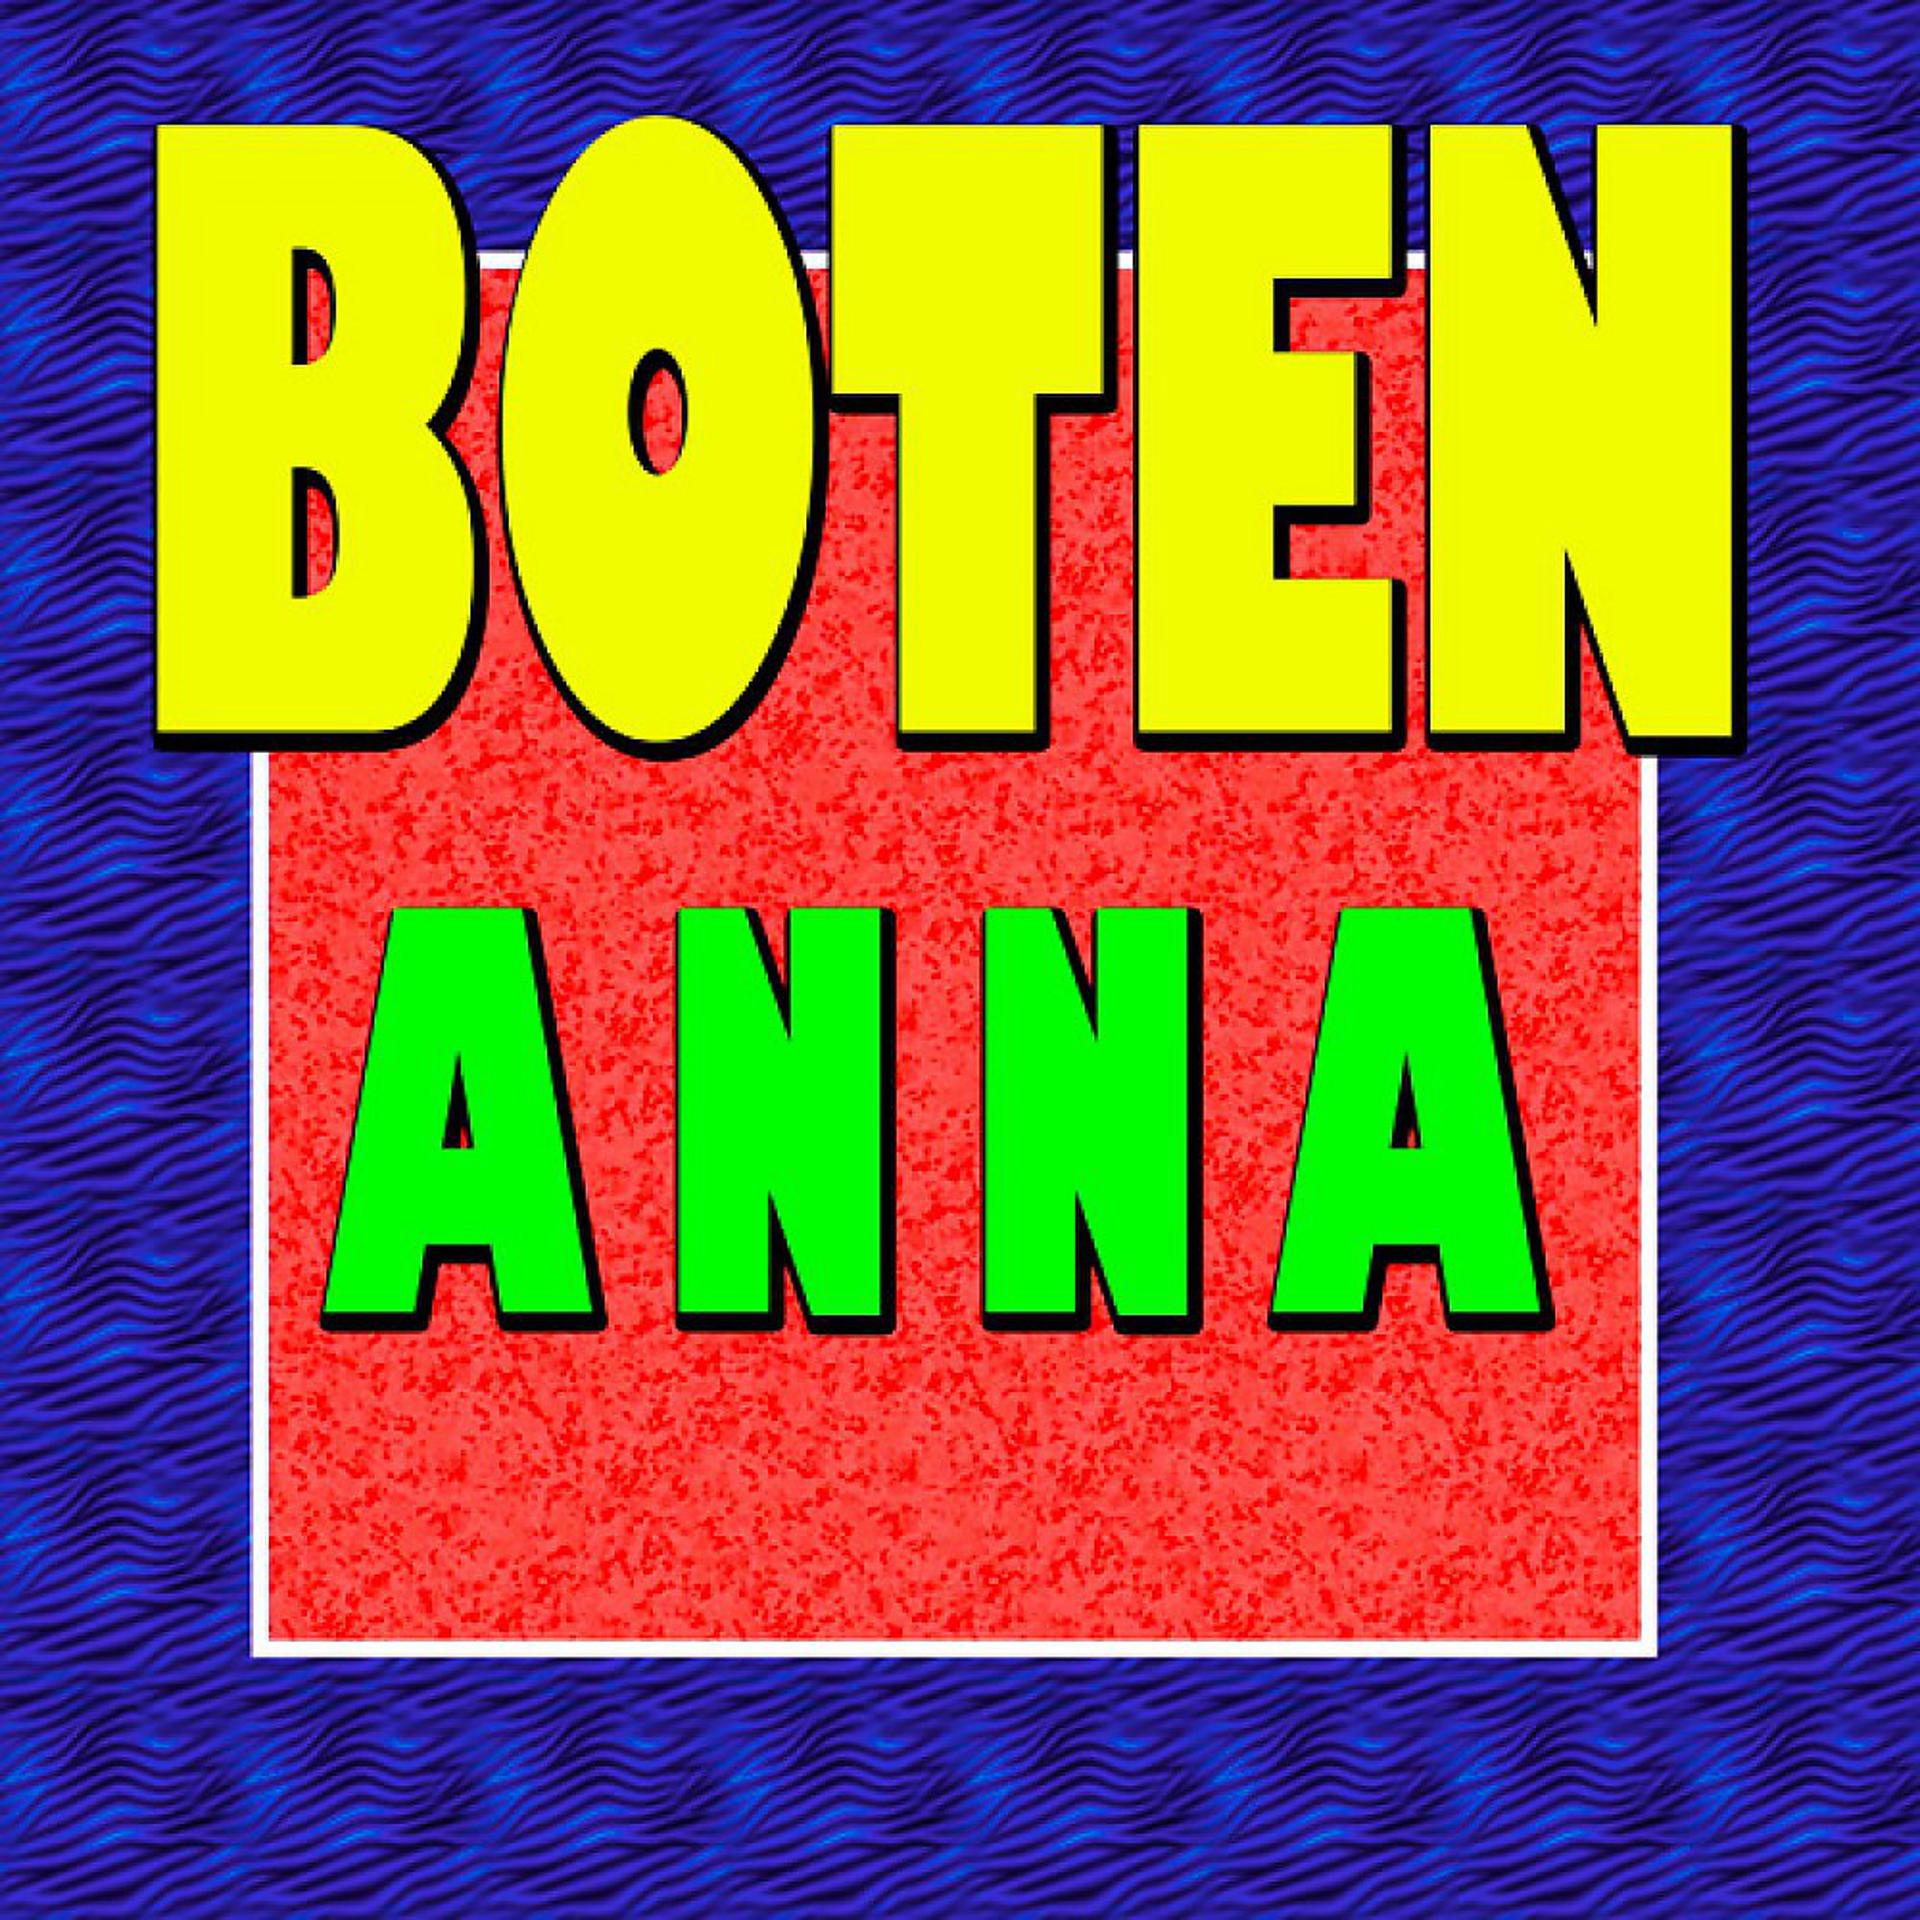 Постер альбома Boten Anna